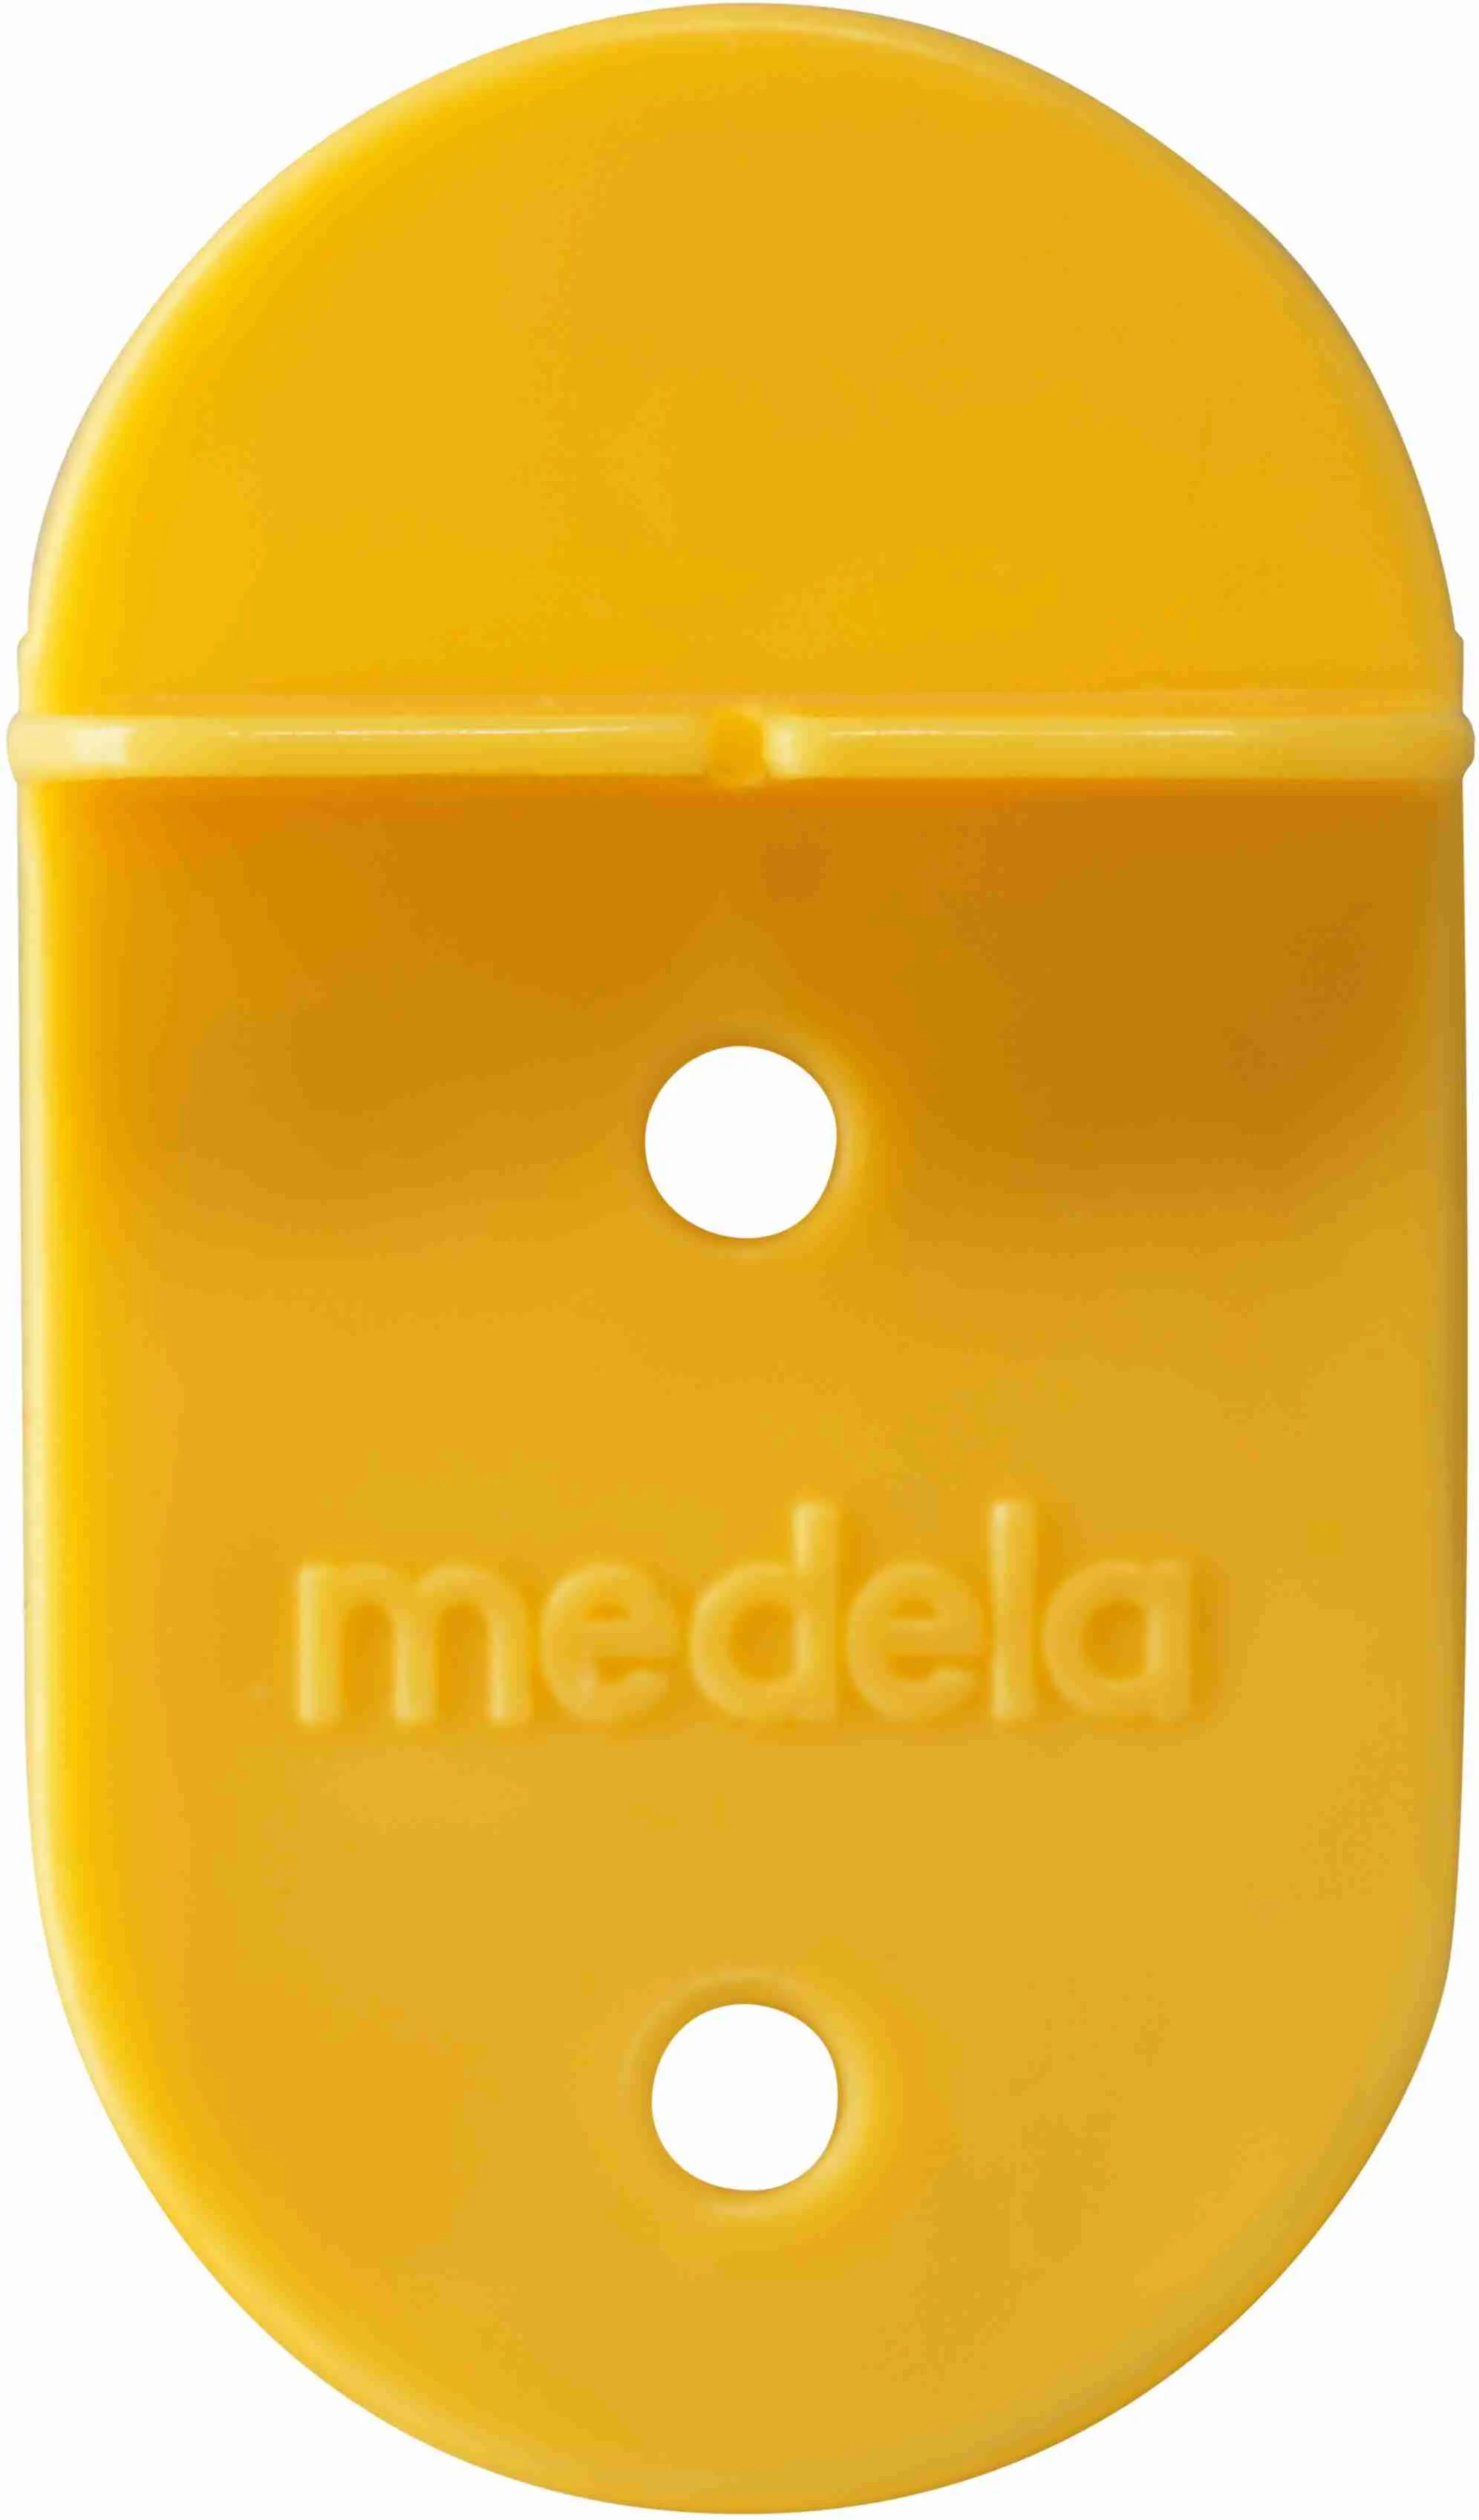 Medela Suplementor - doplnkový systém na dojčenie NOVÝ 1×1ks, systém na dojčenie